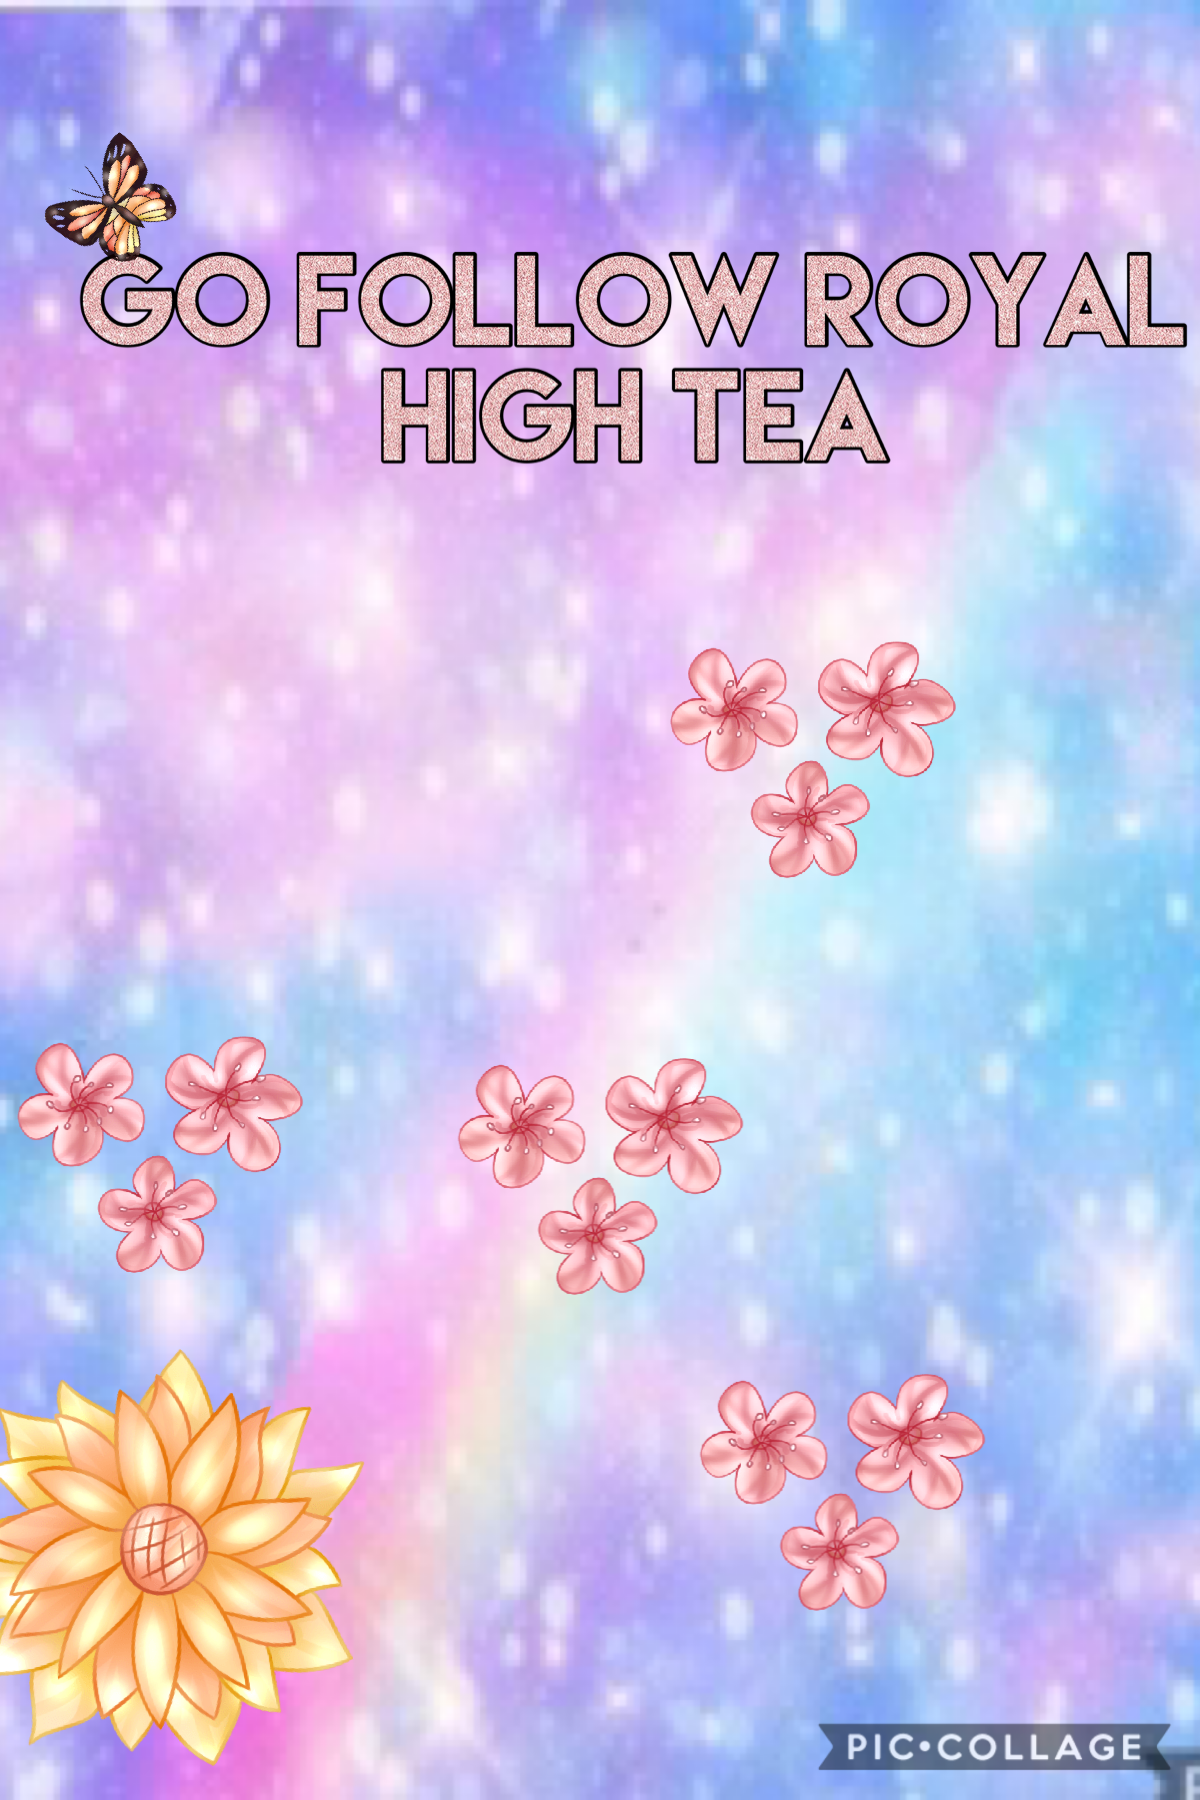 Go follow royal high tea 💞💓